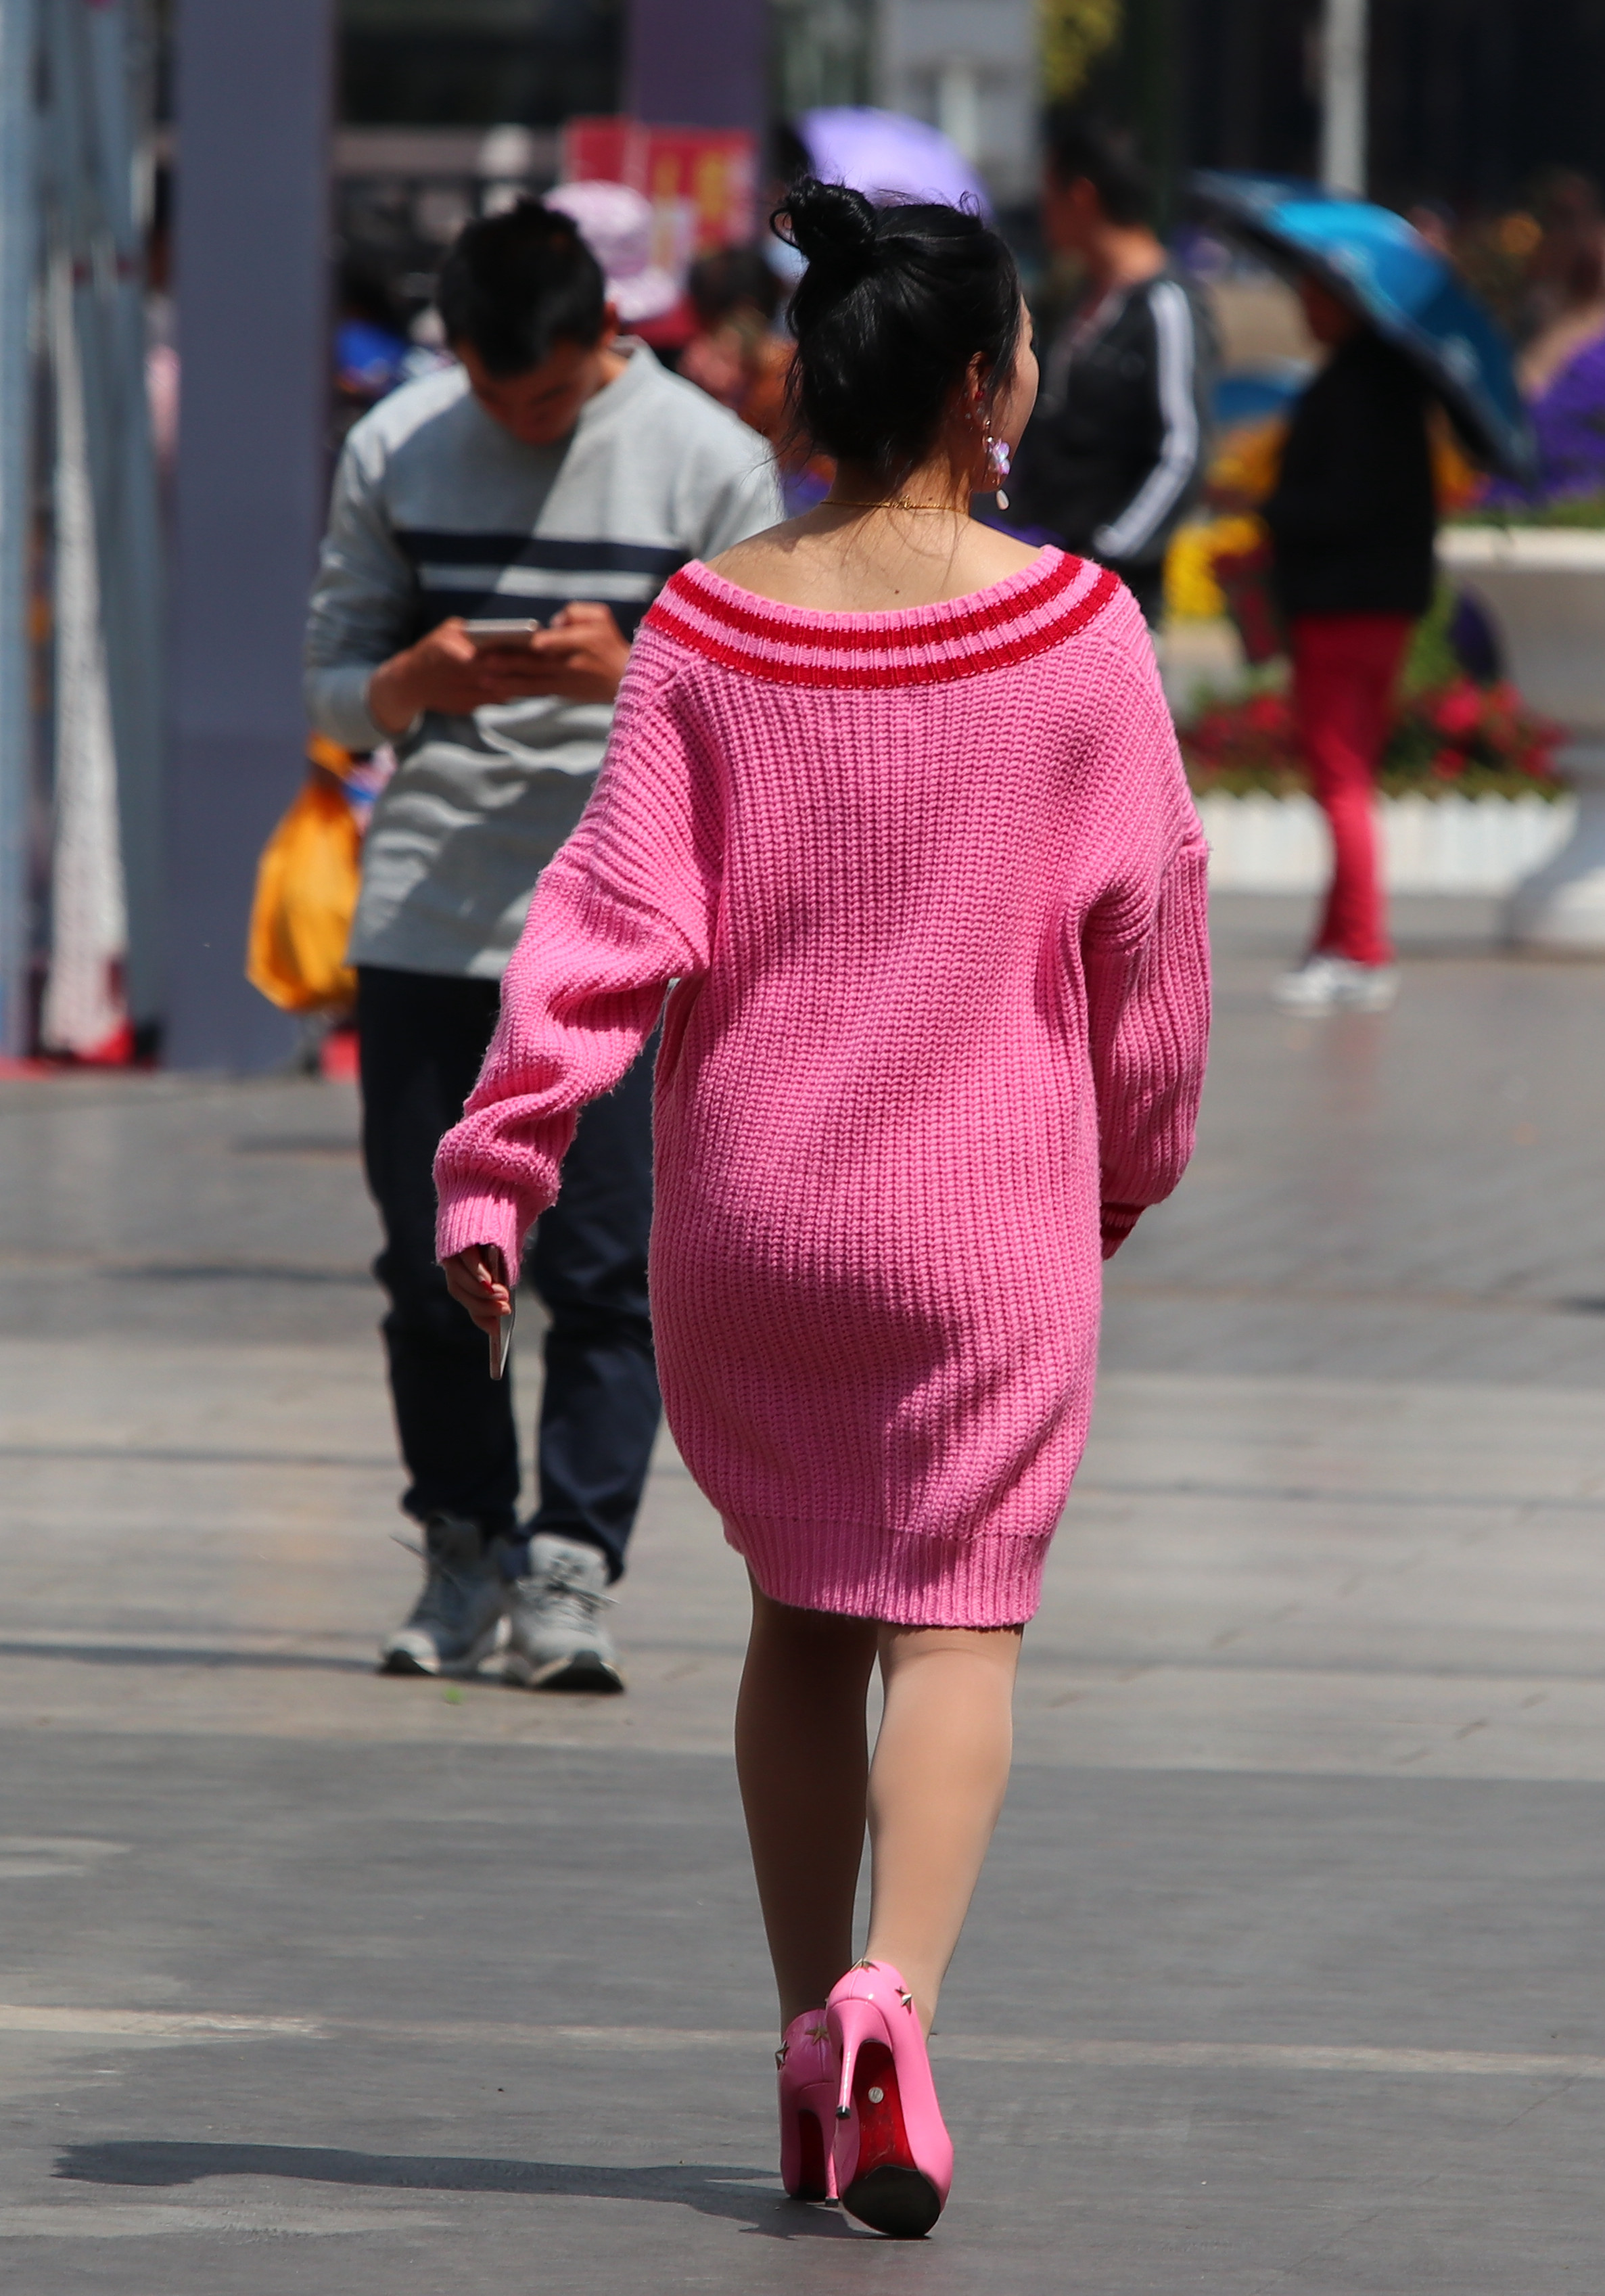 白色背景中穿粉红色夹克的漂亮小孩 库存照片. 图片 包括有 逗人喜爱, 设计, 敬慕, 牛仔裤, 查出 - 241855304